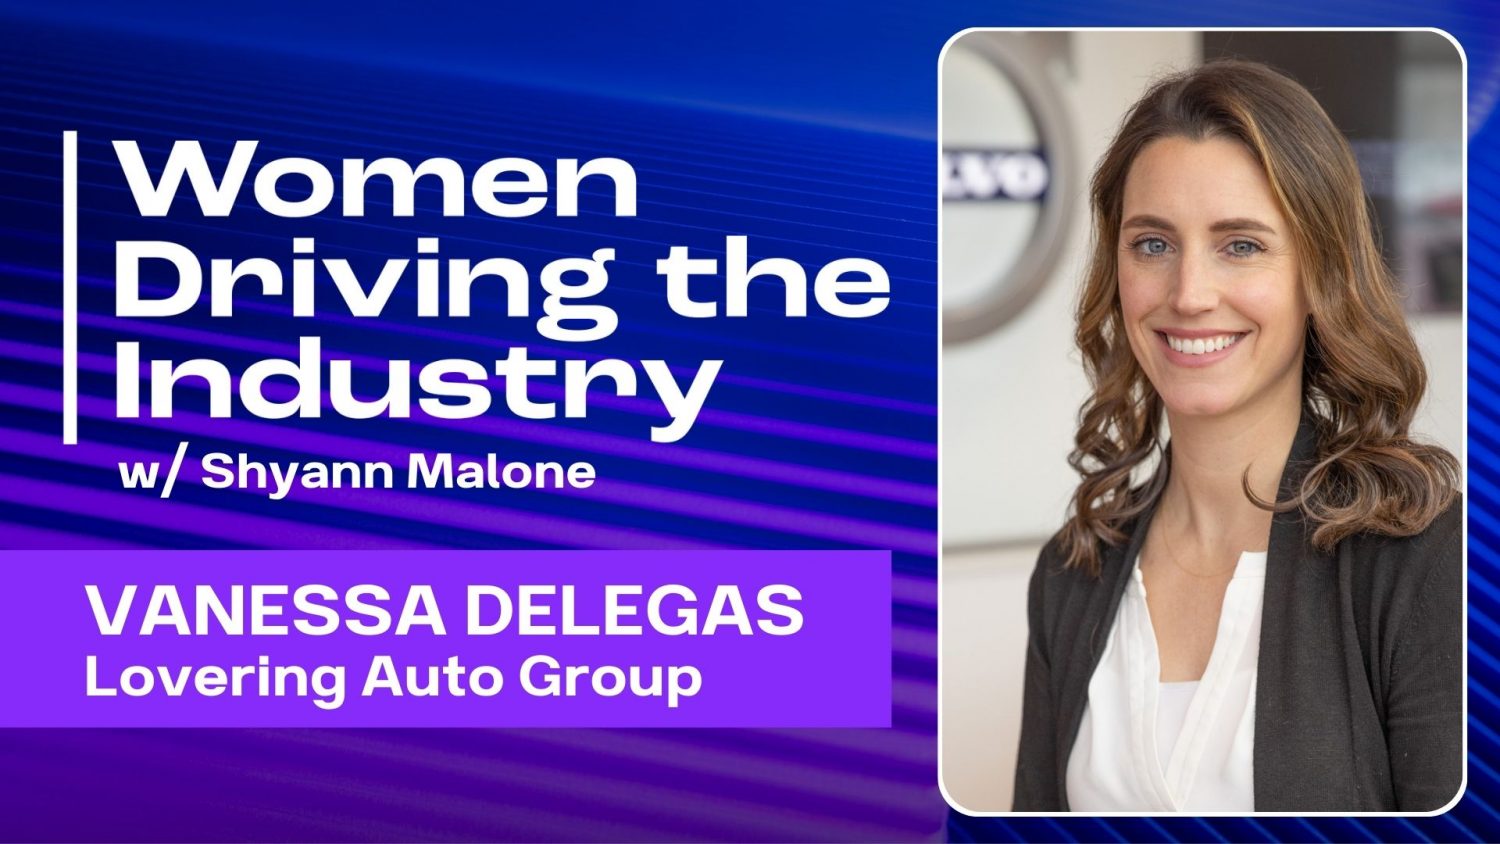 Vanessa Delegas dołącza do Women Driving the Industry, aby podzielić się swoimi spostrzeżeniami na temat relacji między przywództwem a reprezentacją.